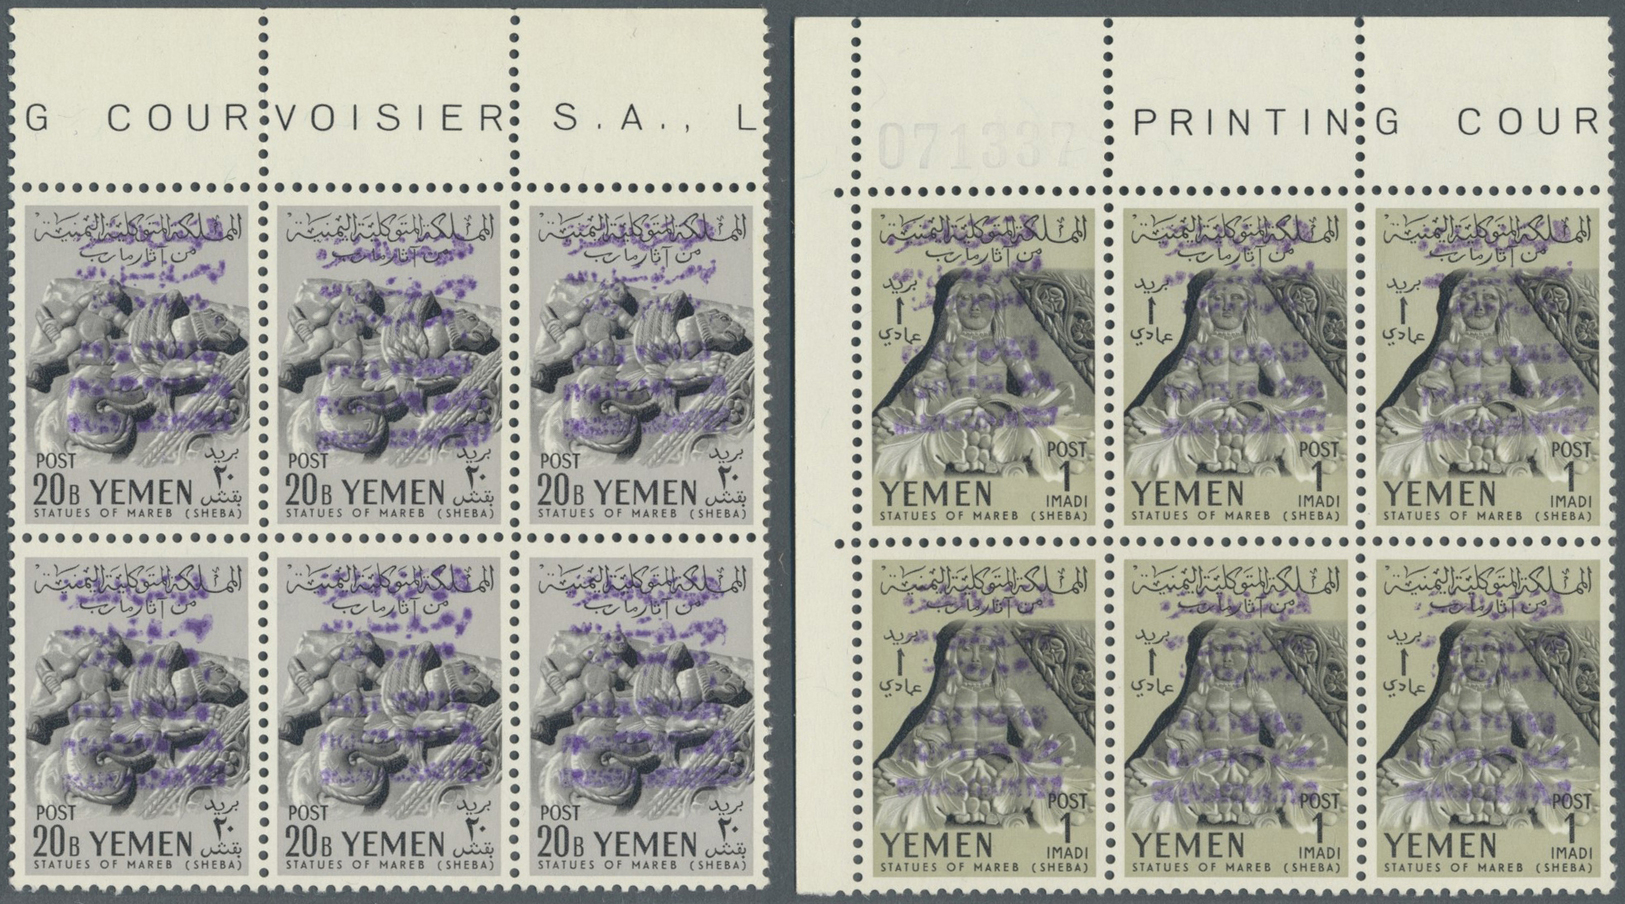 ** Jemen - Königreich: 1964, "FREE YEMEN..." handstamp in violet on 1961 Archaeology issue, complete set of ten values a